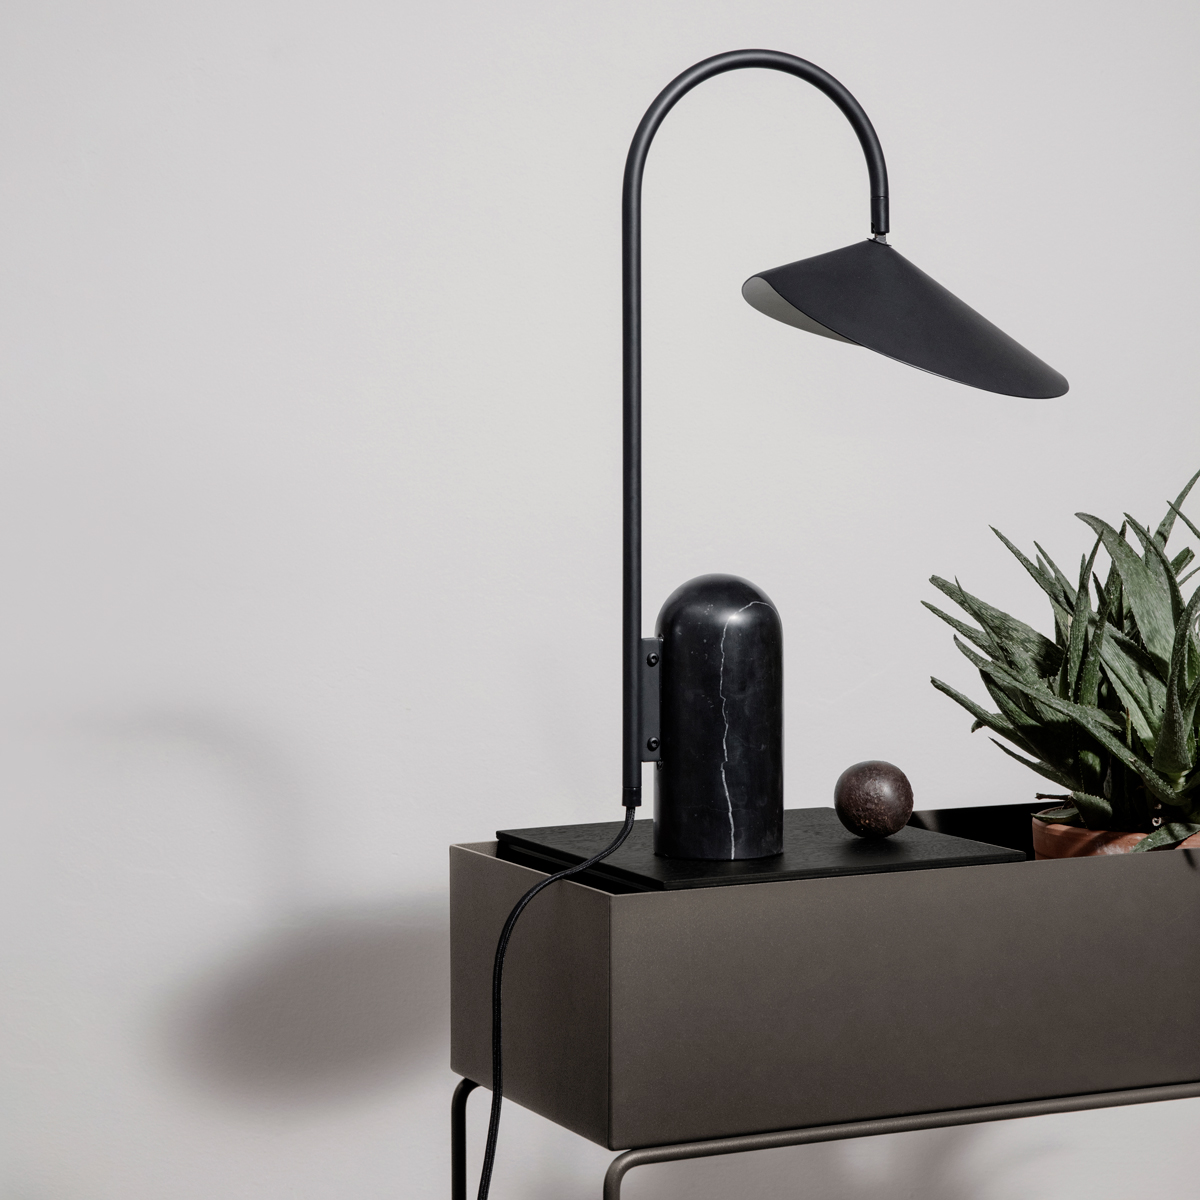 De bloembladvormige kap van deze zwarte tafellamp is sierlijk en tegelijkertijd ook nog eens kantelbaar. Functional design: mooi en praktisch dus. 